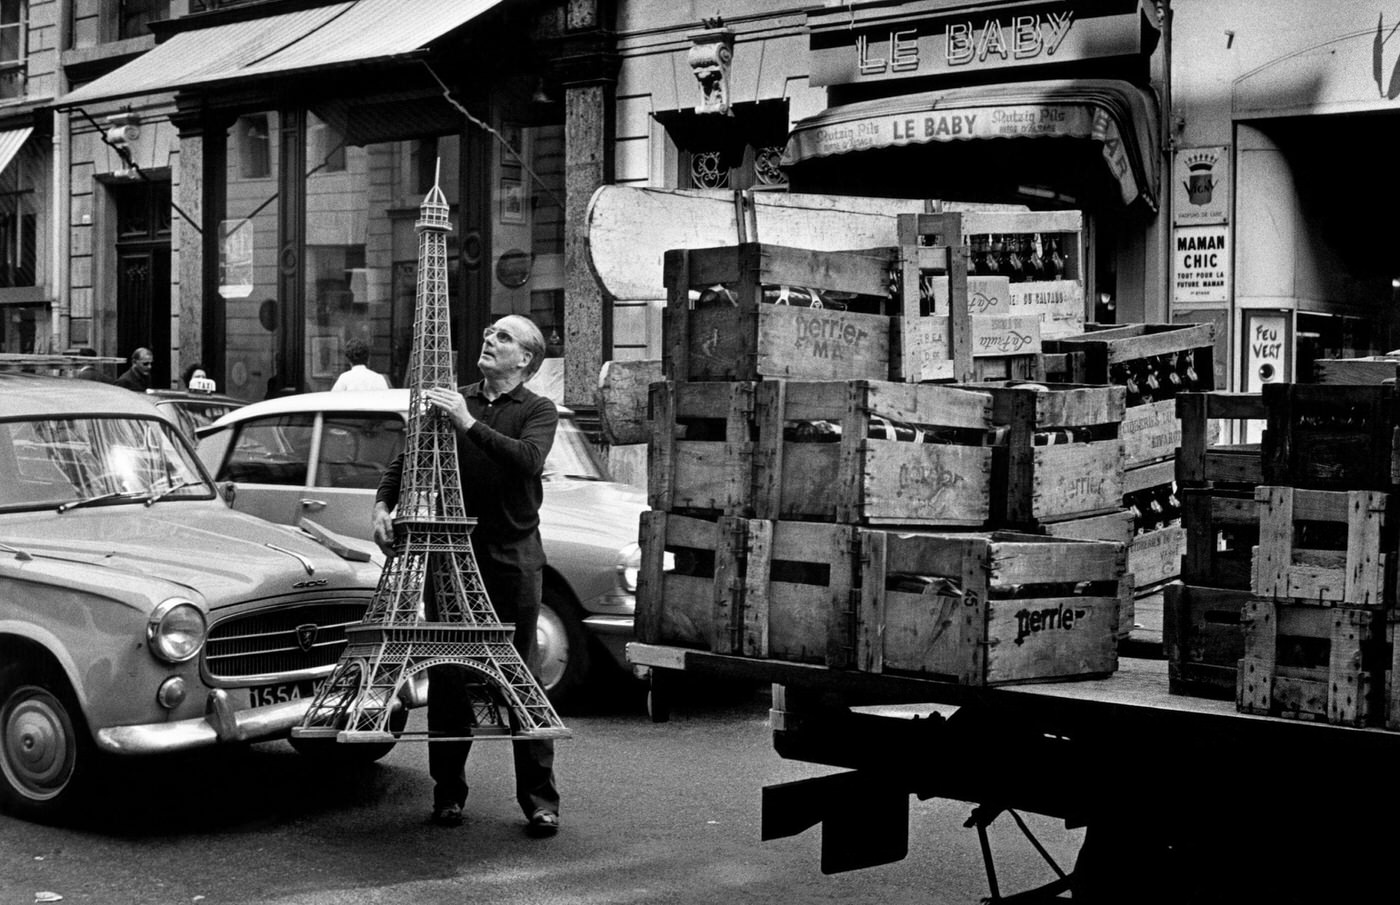 Paris, France, 1966